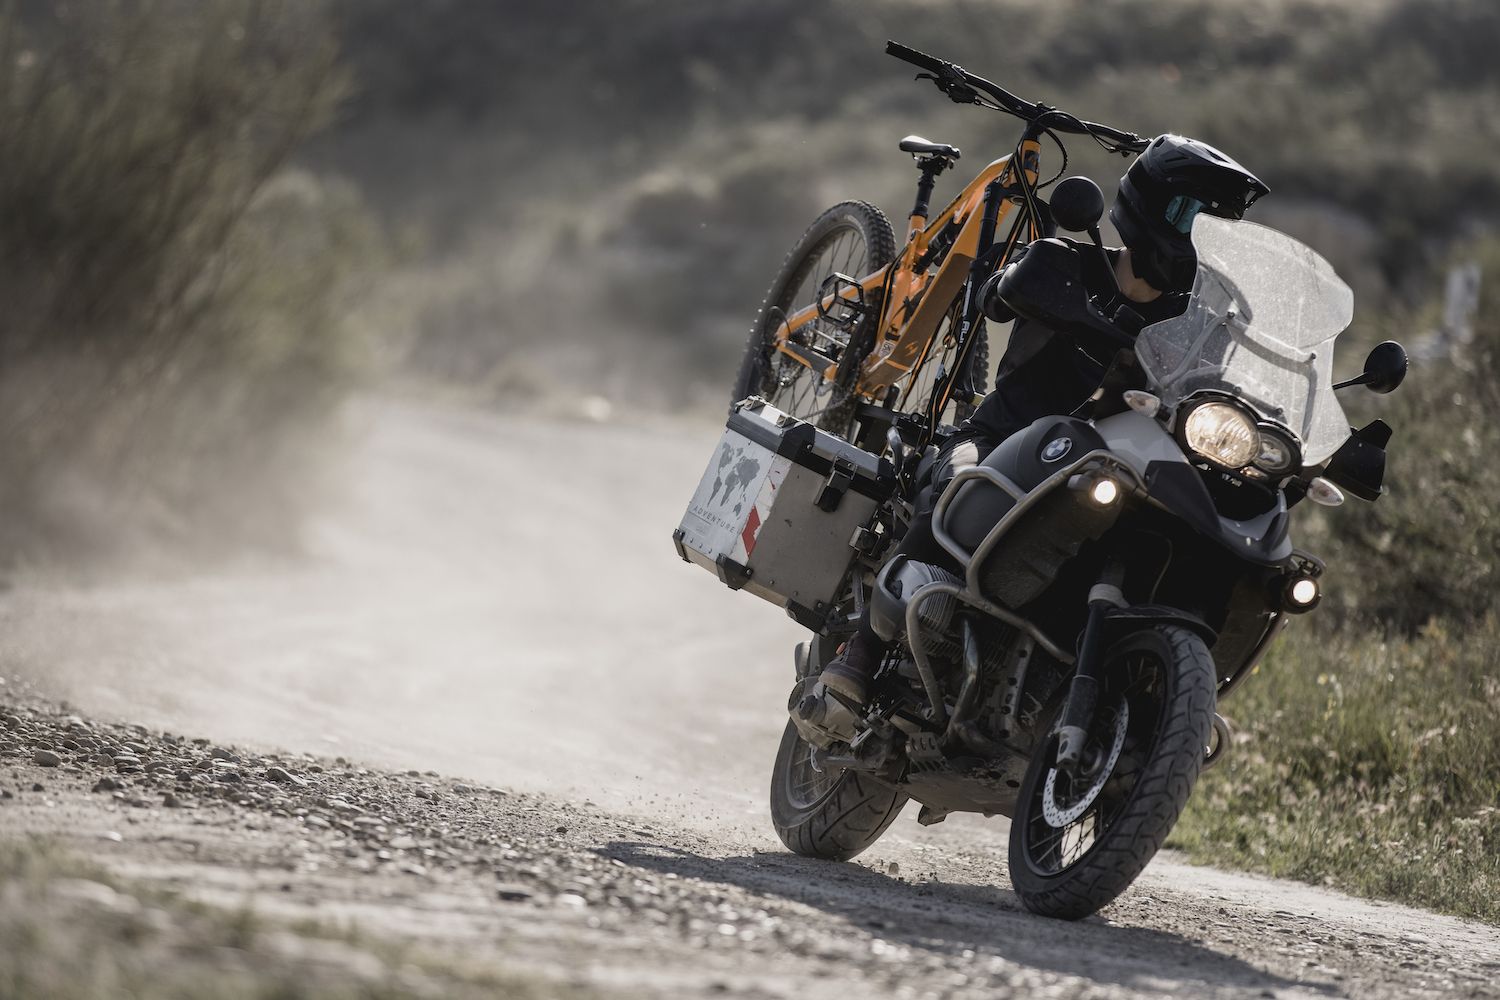 David Cachon El Triangulo del Desierto de los Monegros - Moto - Bici